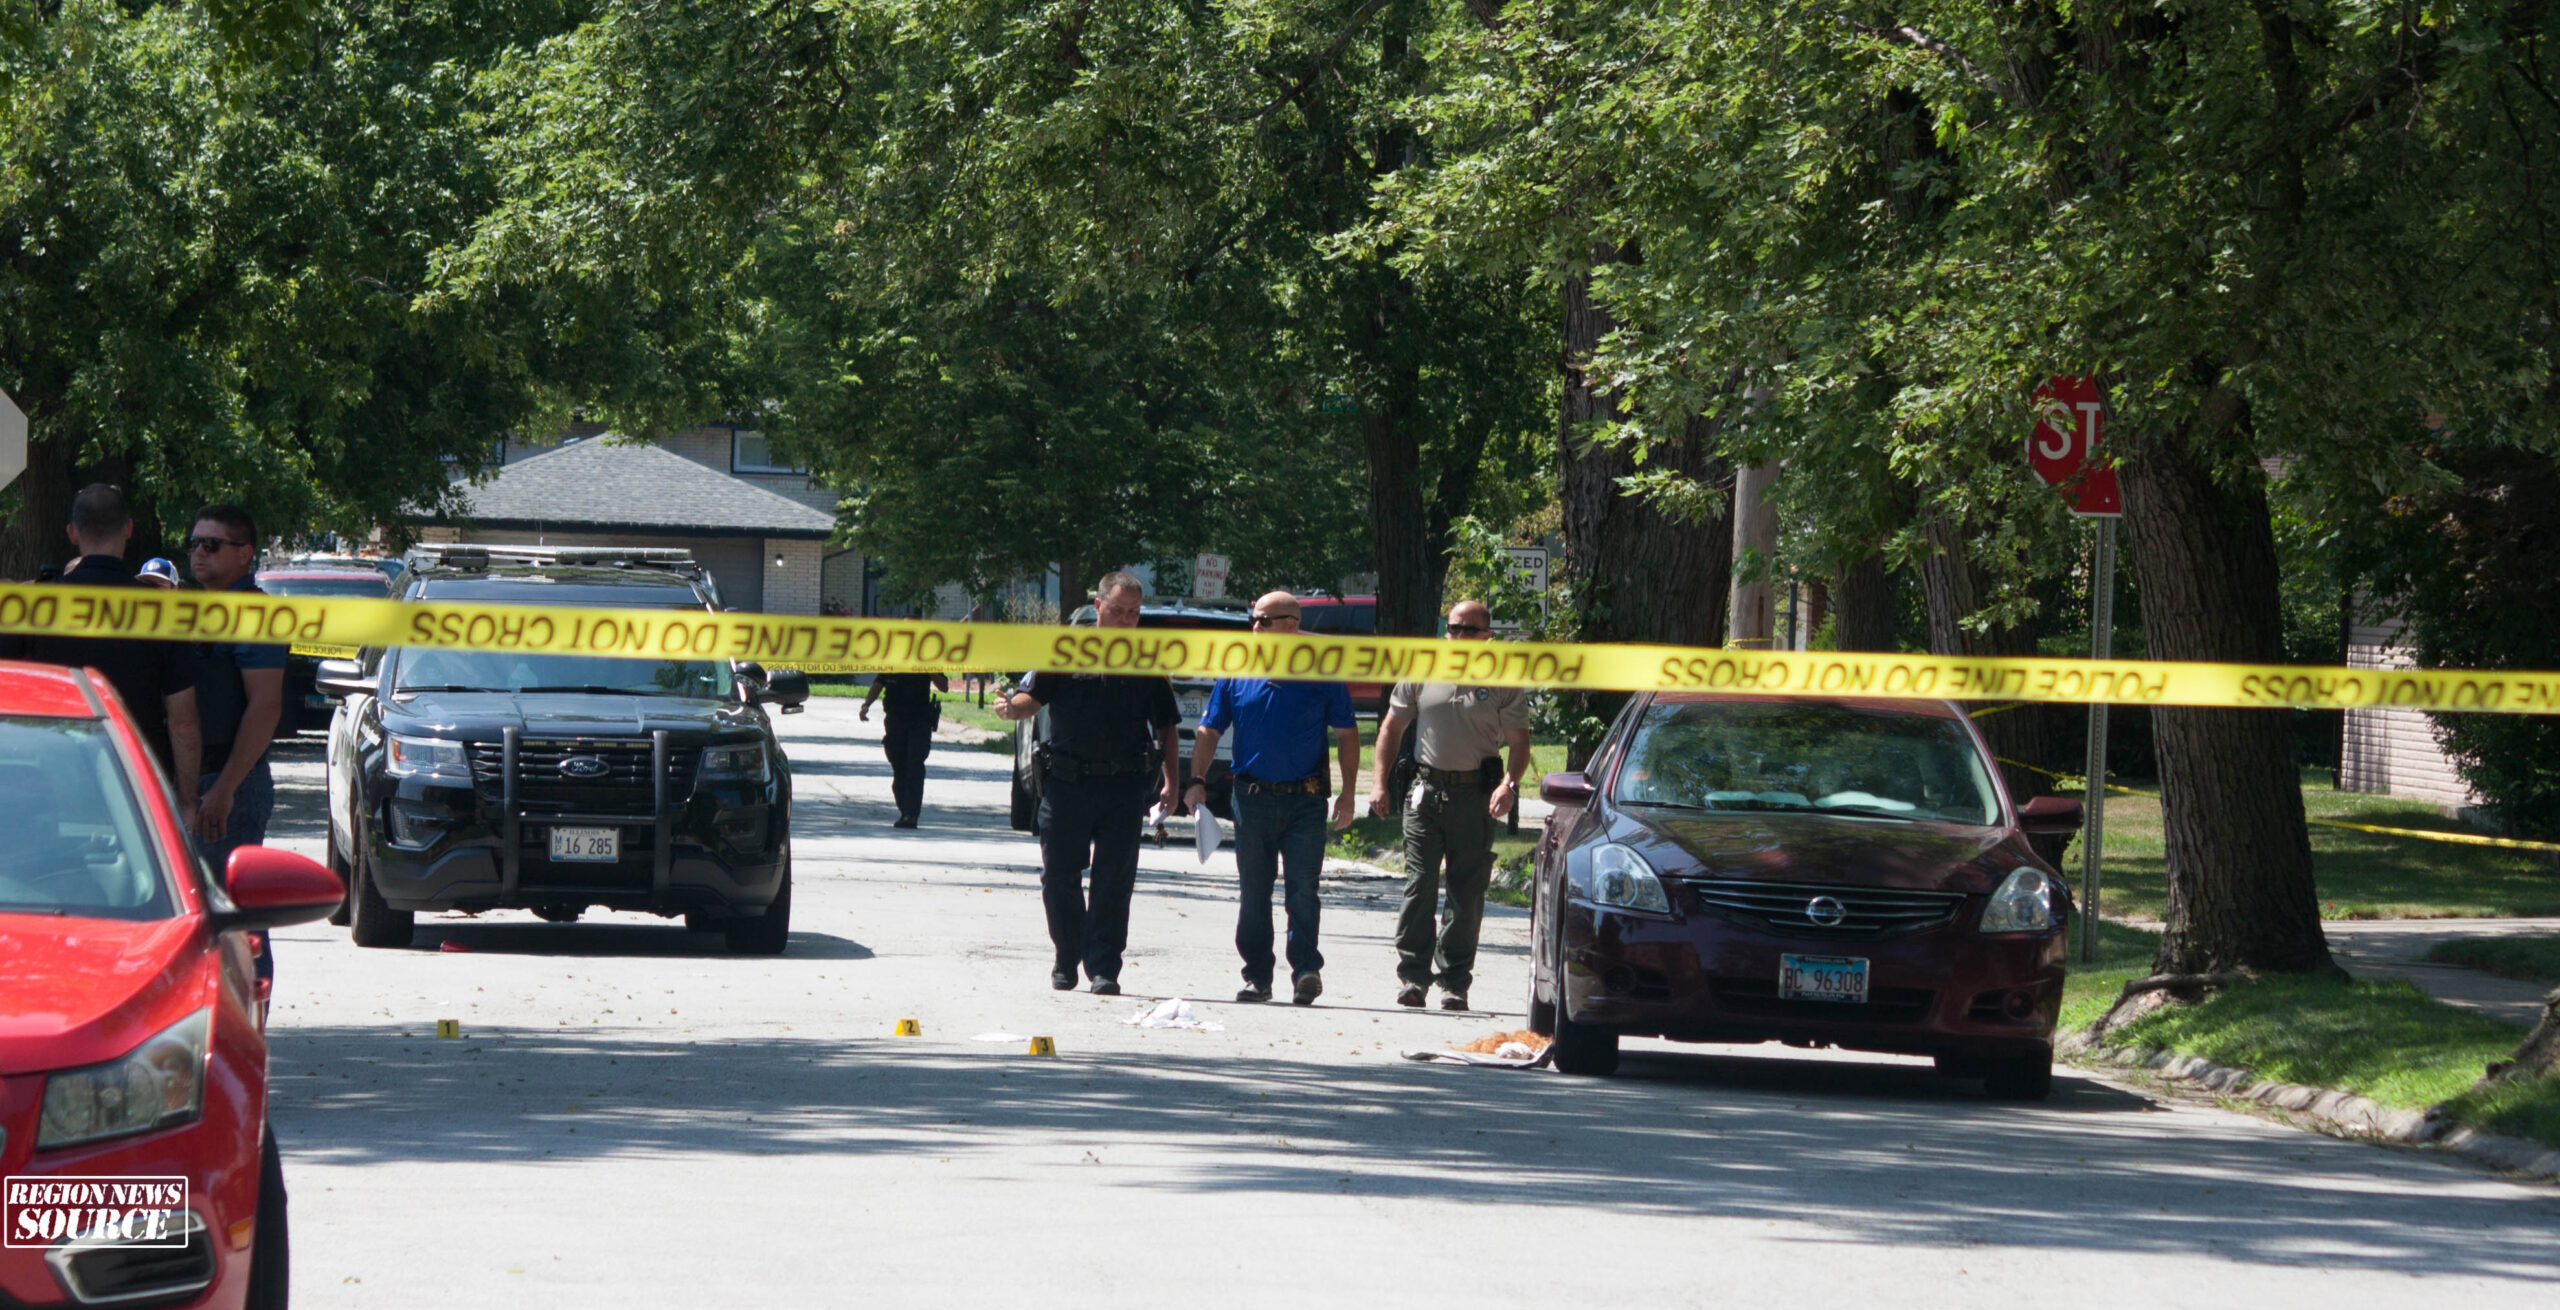 Lansing Police Investigating Homicide - Region News Source